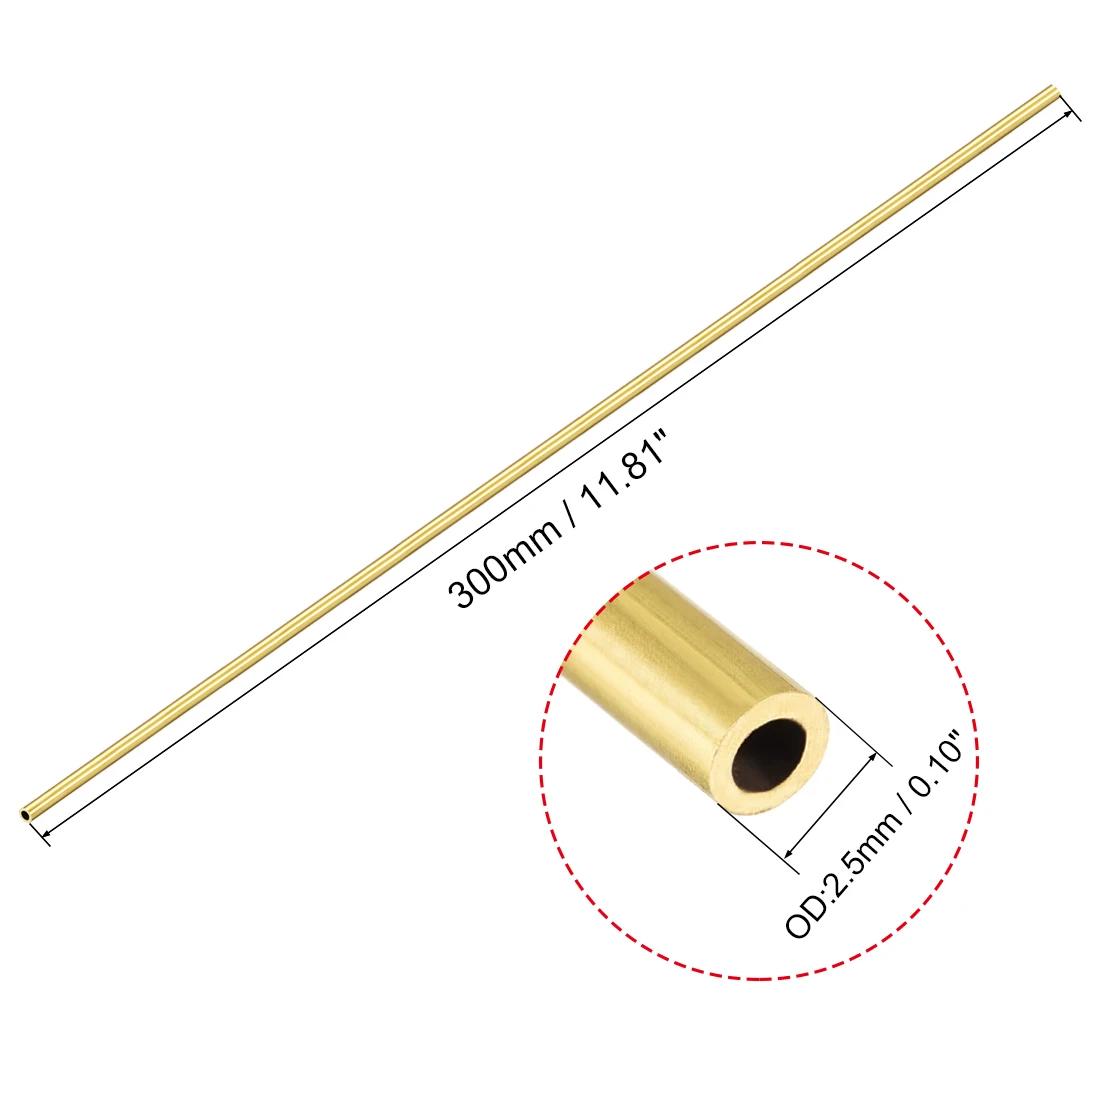 Uxcell 0,5 мм ID латунь круглая труба 300 мм длиной 2,5 мм 3,5 мм 4,5 мм 5,5 мм 6,5 мм 7,5 мм 8,5 мм 9,5 мм диаметр бесшовных прямая труба трубопровод